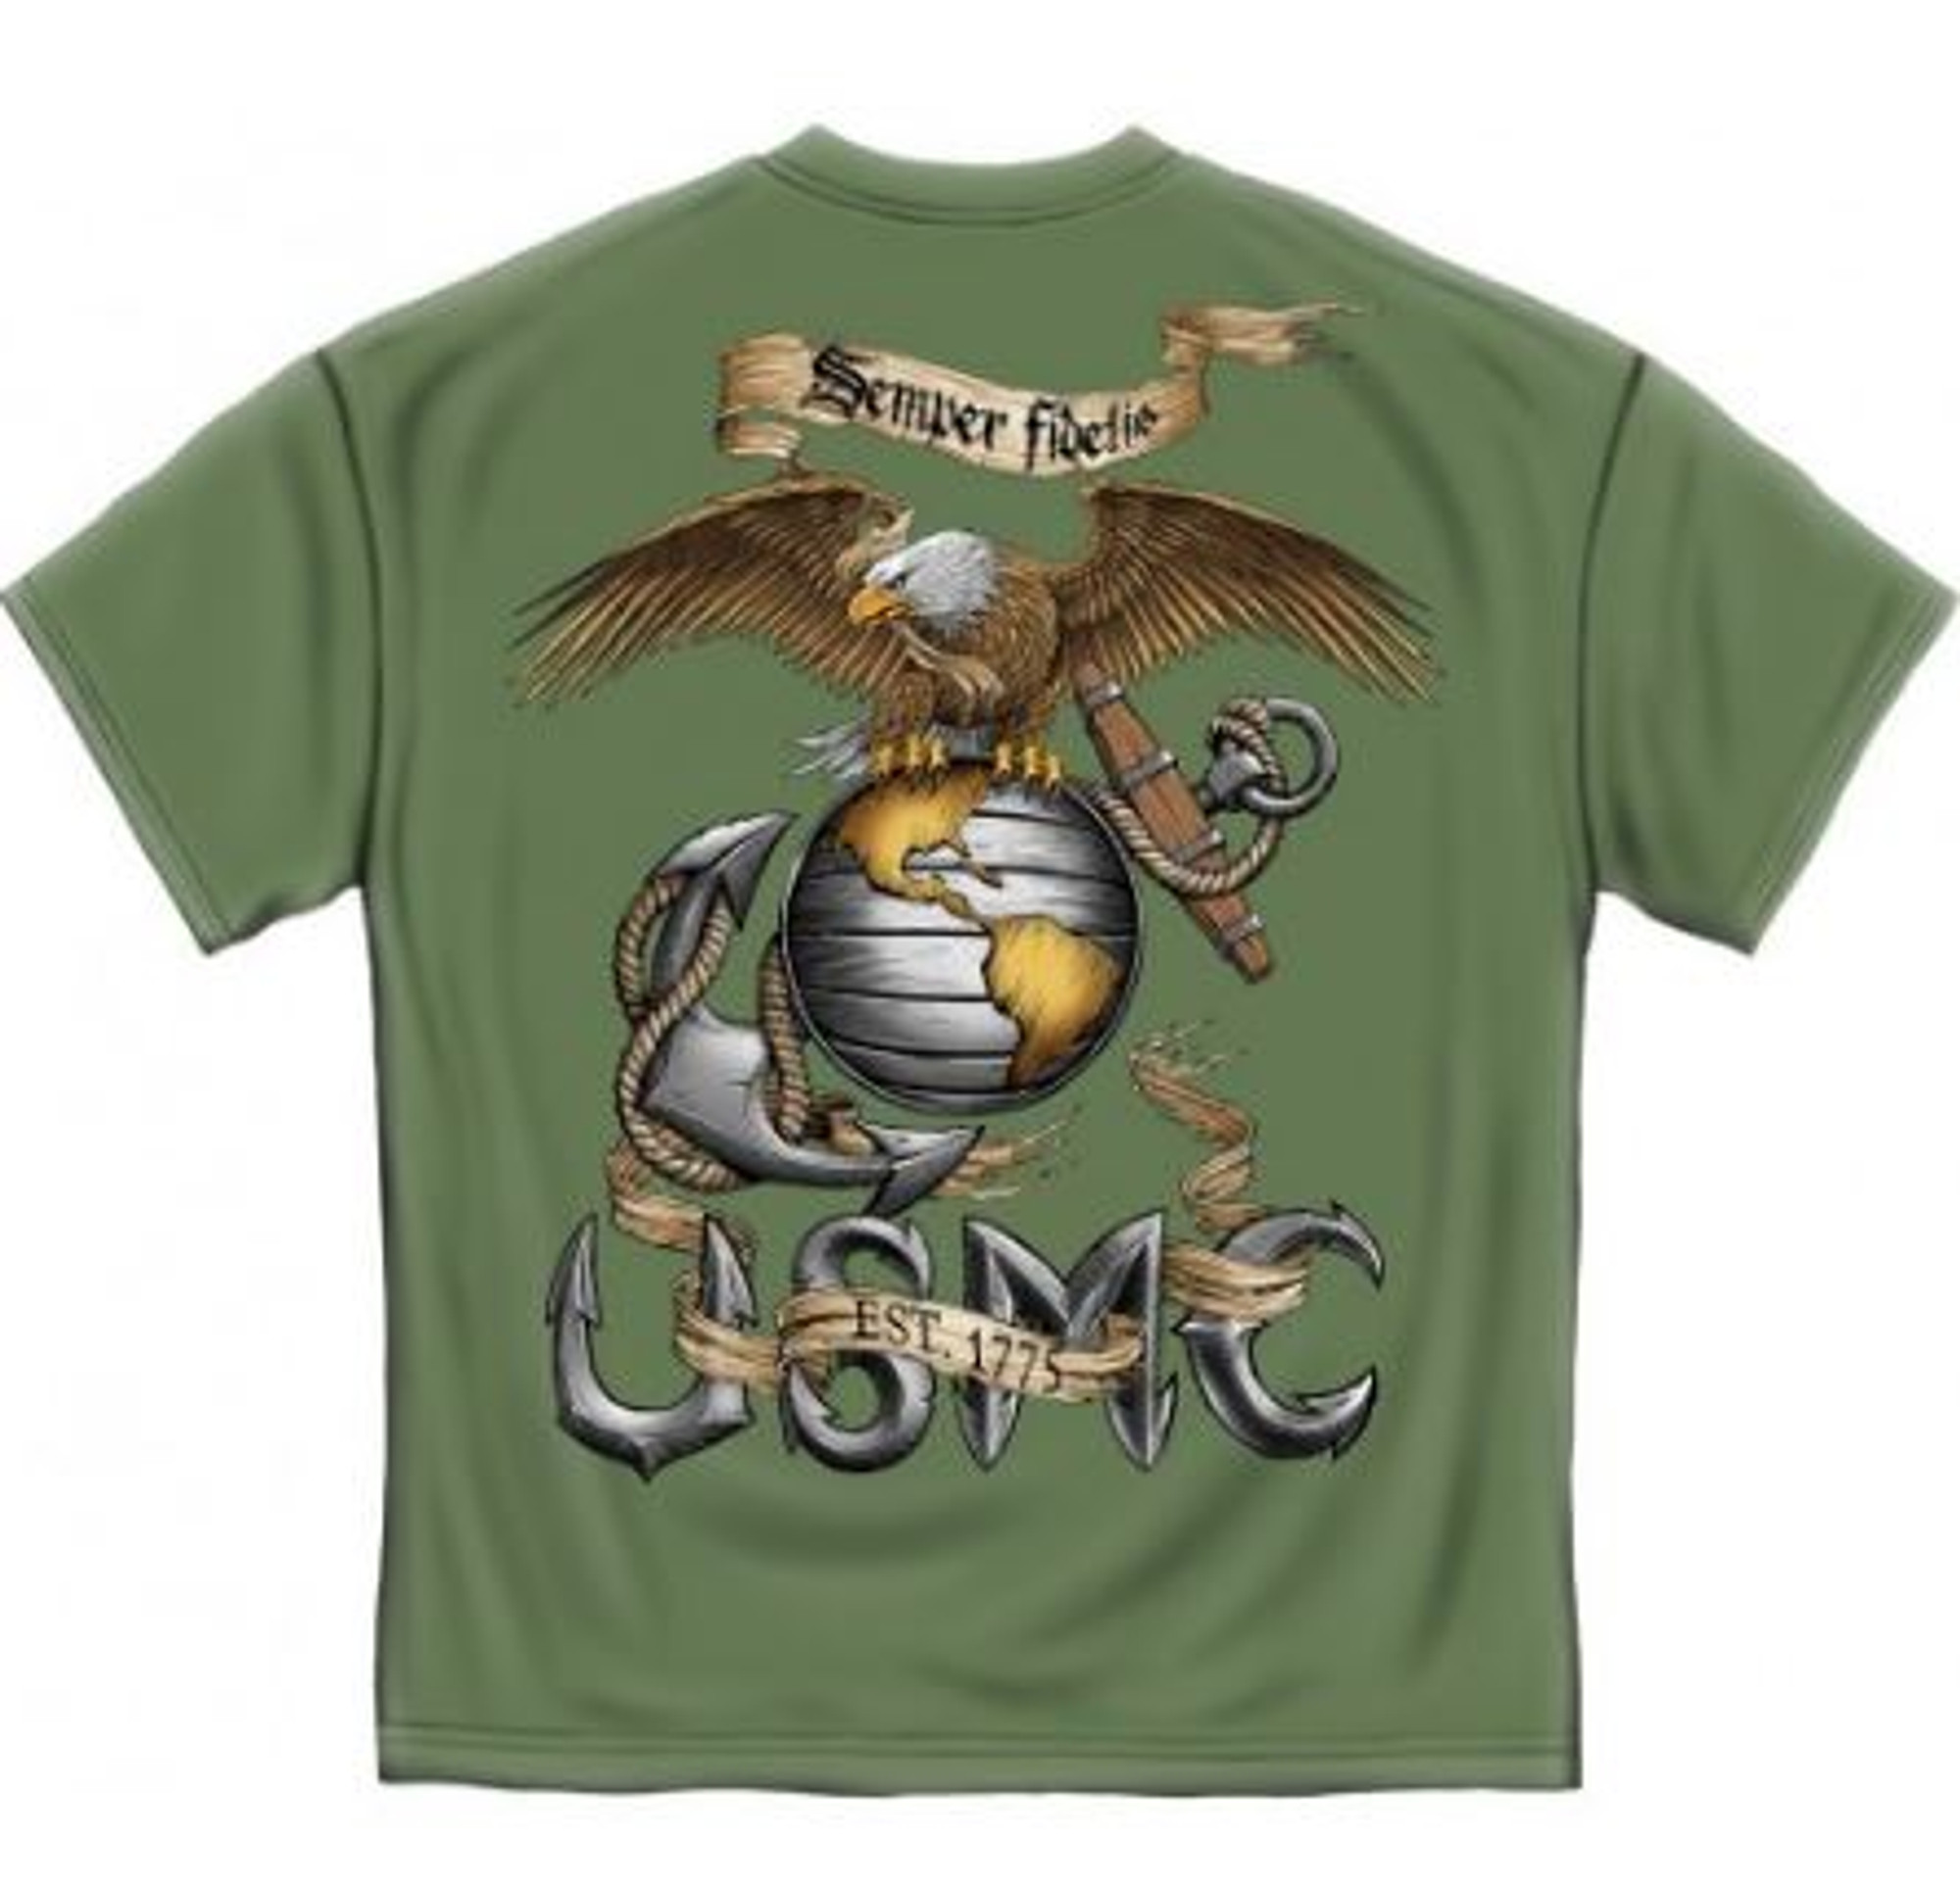 USMC "Semper Fidetis - Green" T-Shirt